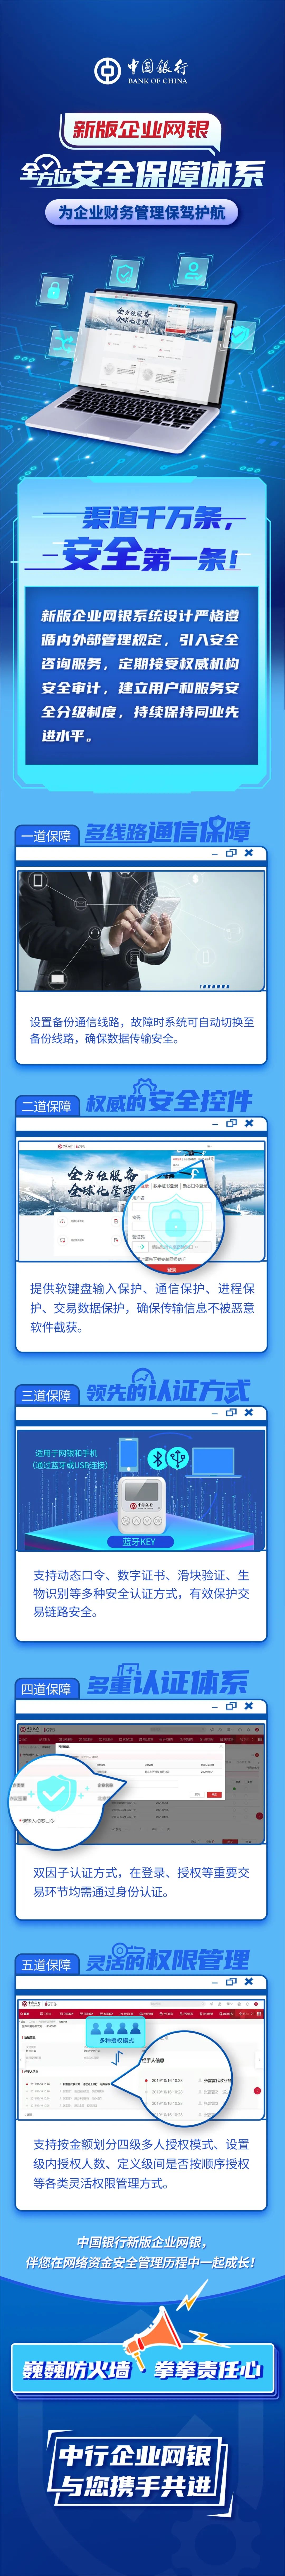 中国银行新版企业网银全方位保障体系